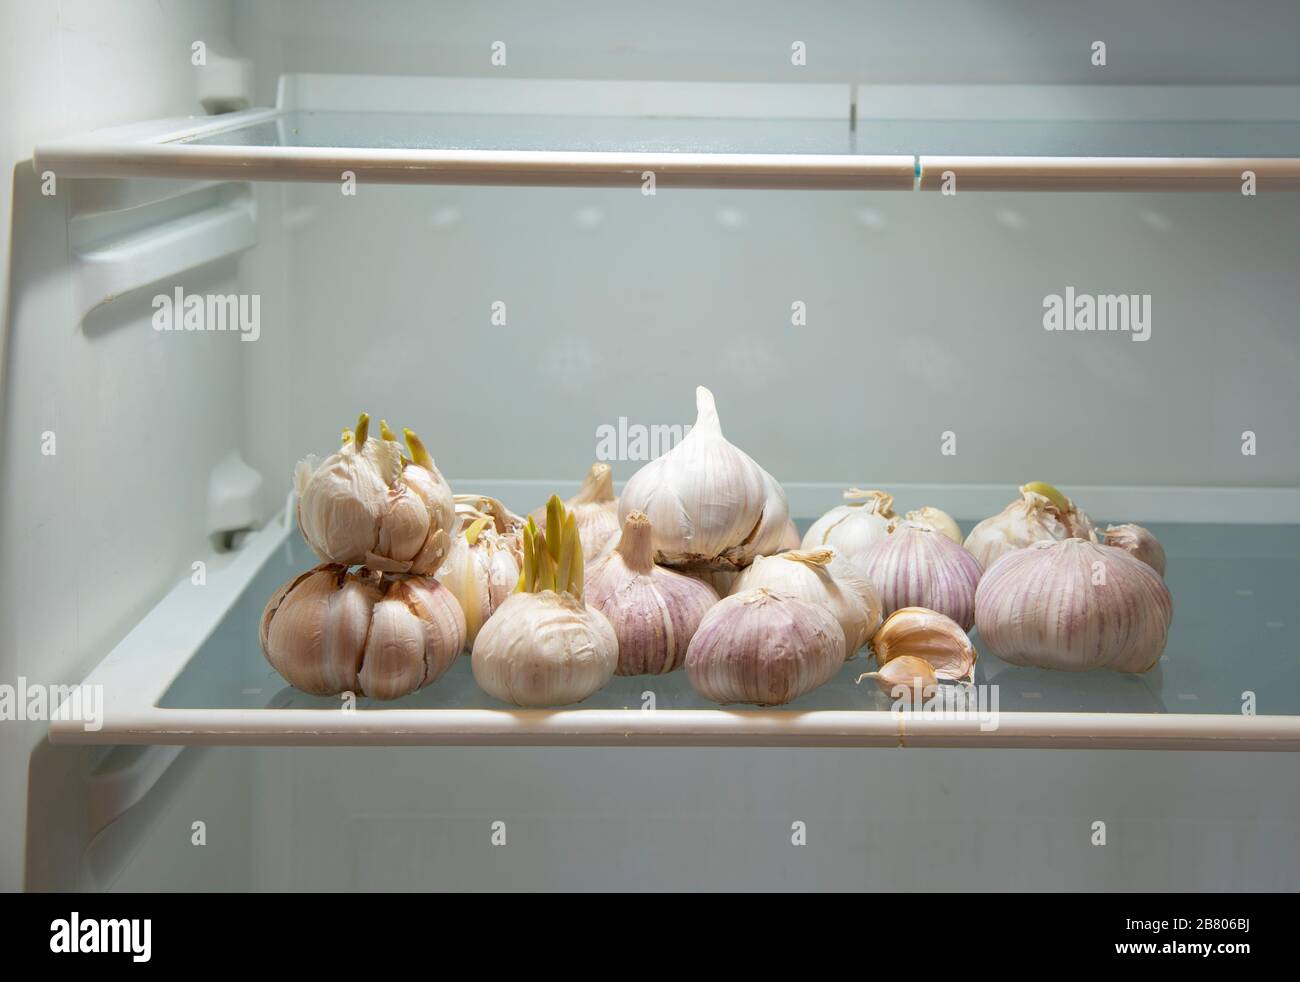 Как сохранить чеснок в холодильнике